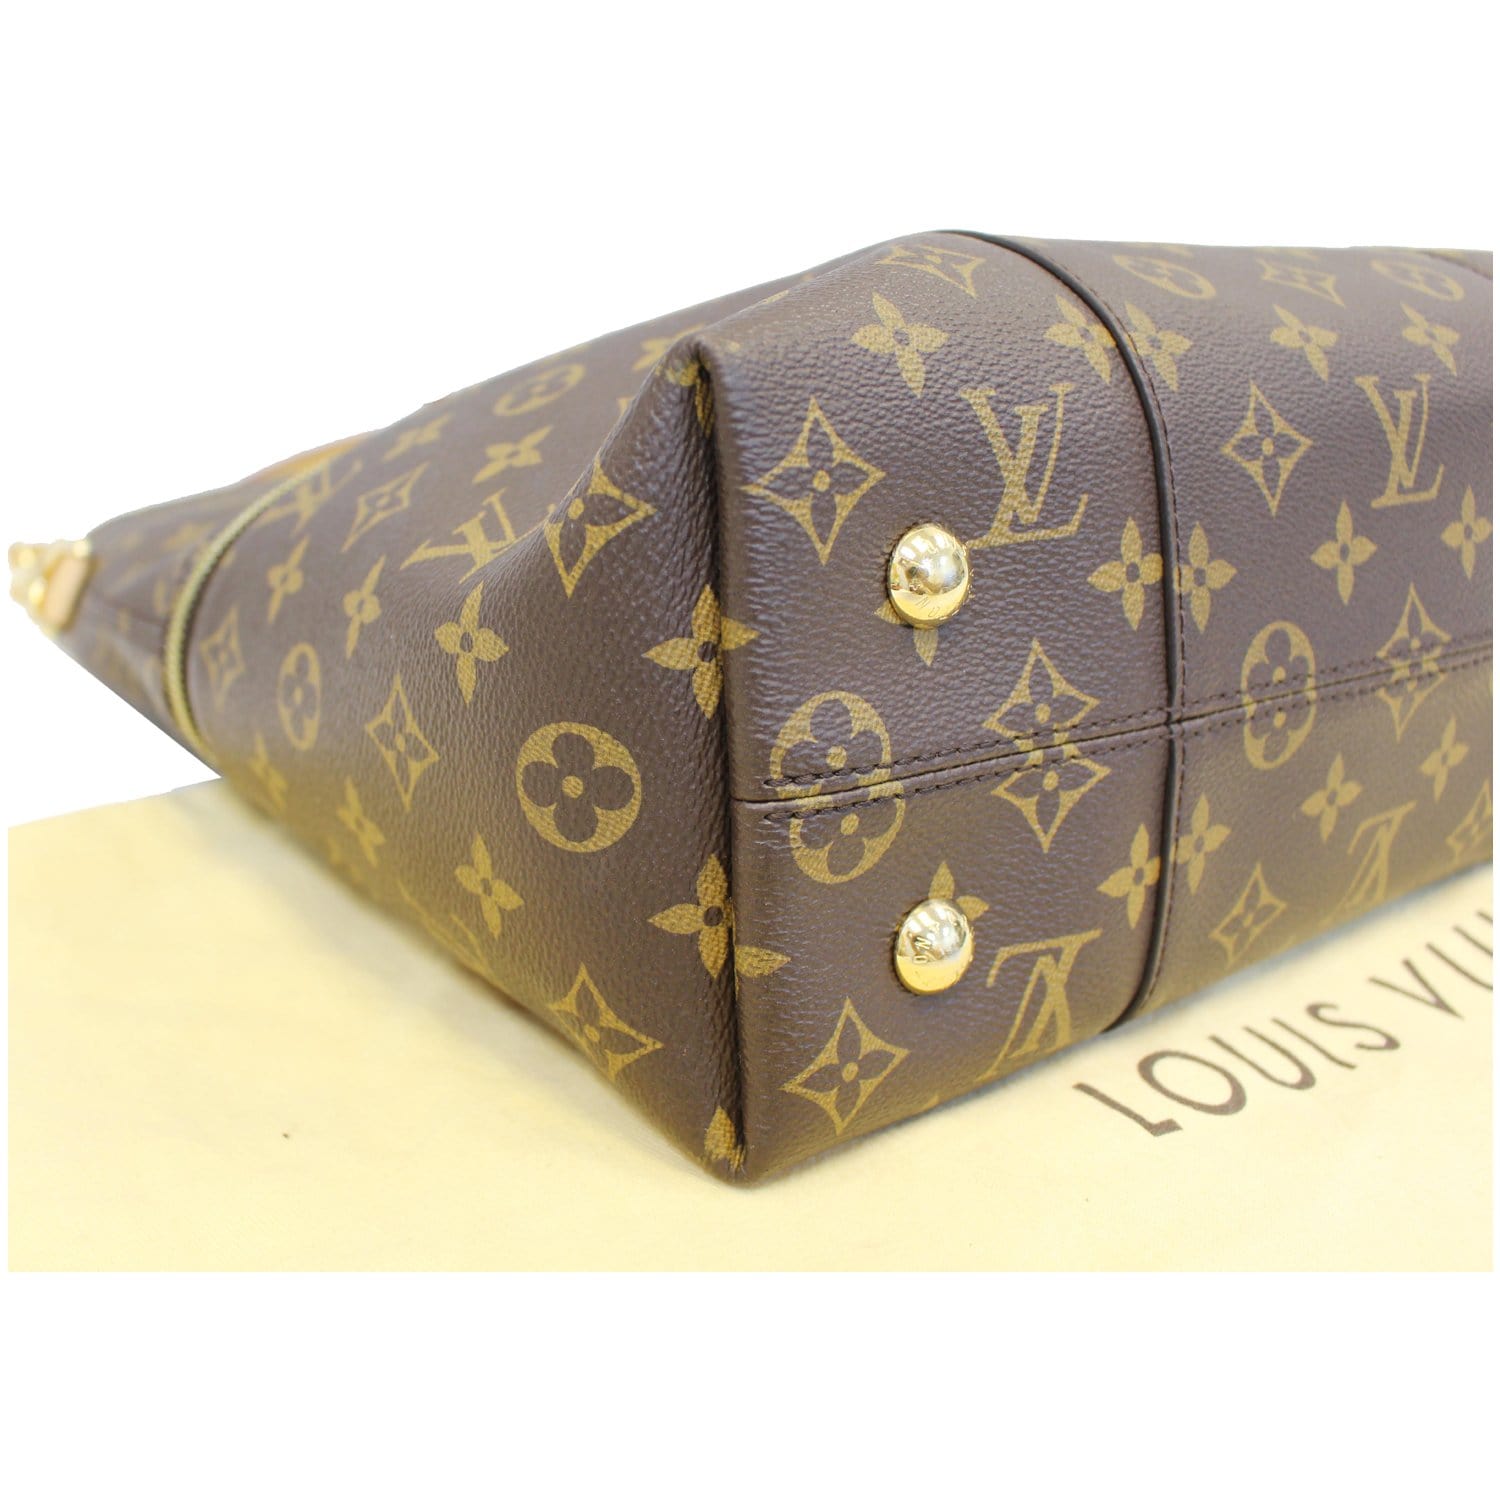 Louis Vuitton Melie Monogram Canvas Hobo Shoulder Bag